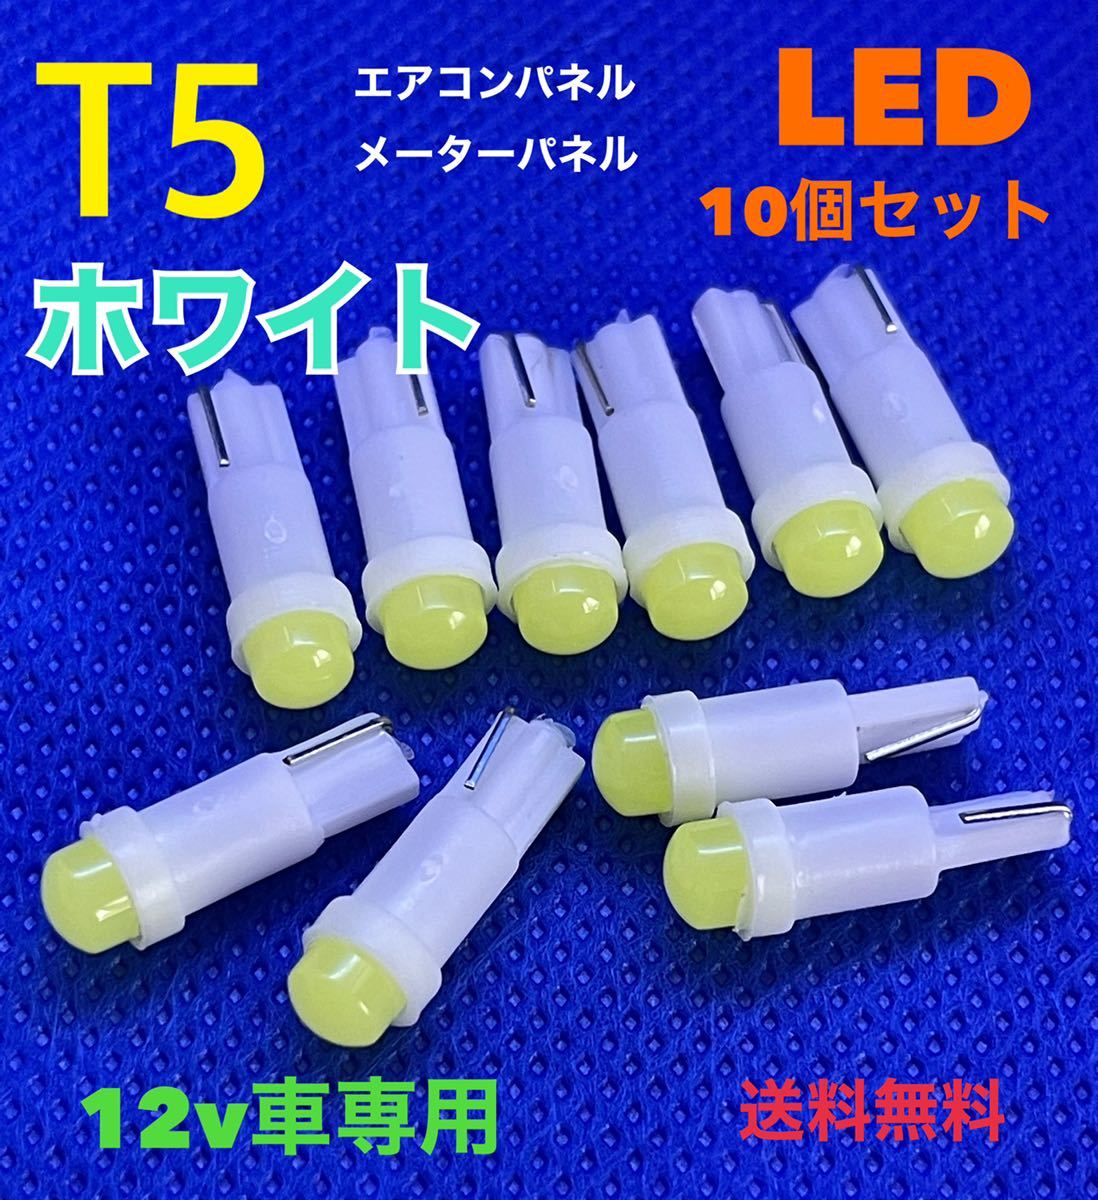 T5 белый ( белый ) LED клапан(лампа) [10 шт. комплект ] Wedge лампочка панель приборов кондиционер panel измерительный прибор лампочка высокая яркость продолжительный срок службы [ бесплатная доставка ]